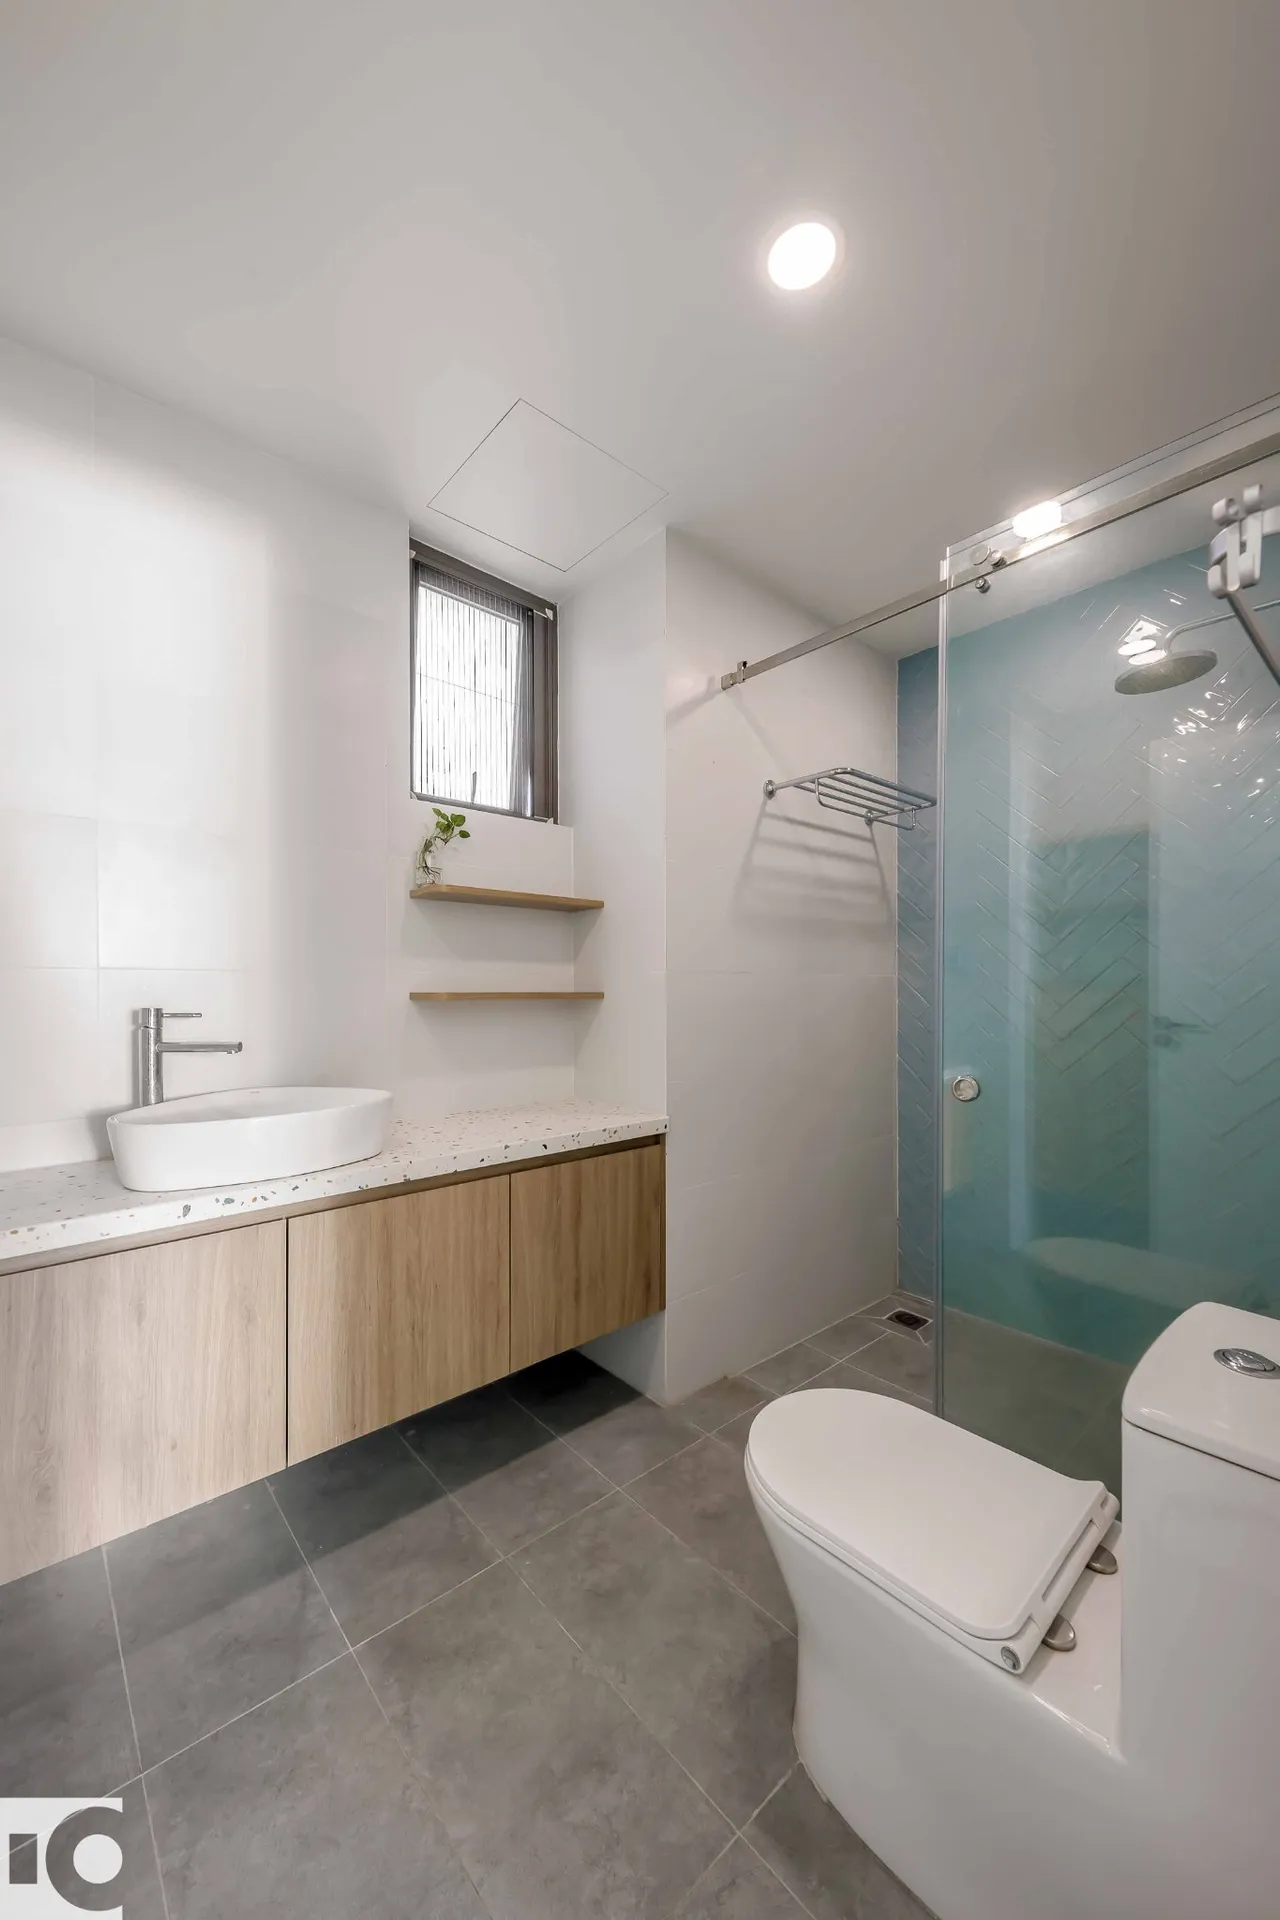 Hoàn thiện nội thất phòng tắm, nhà vệ sinh Căn hộ E04 Saigon South Residences phong cách Tối giản Minimalist